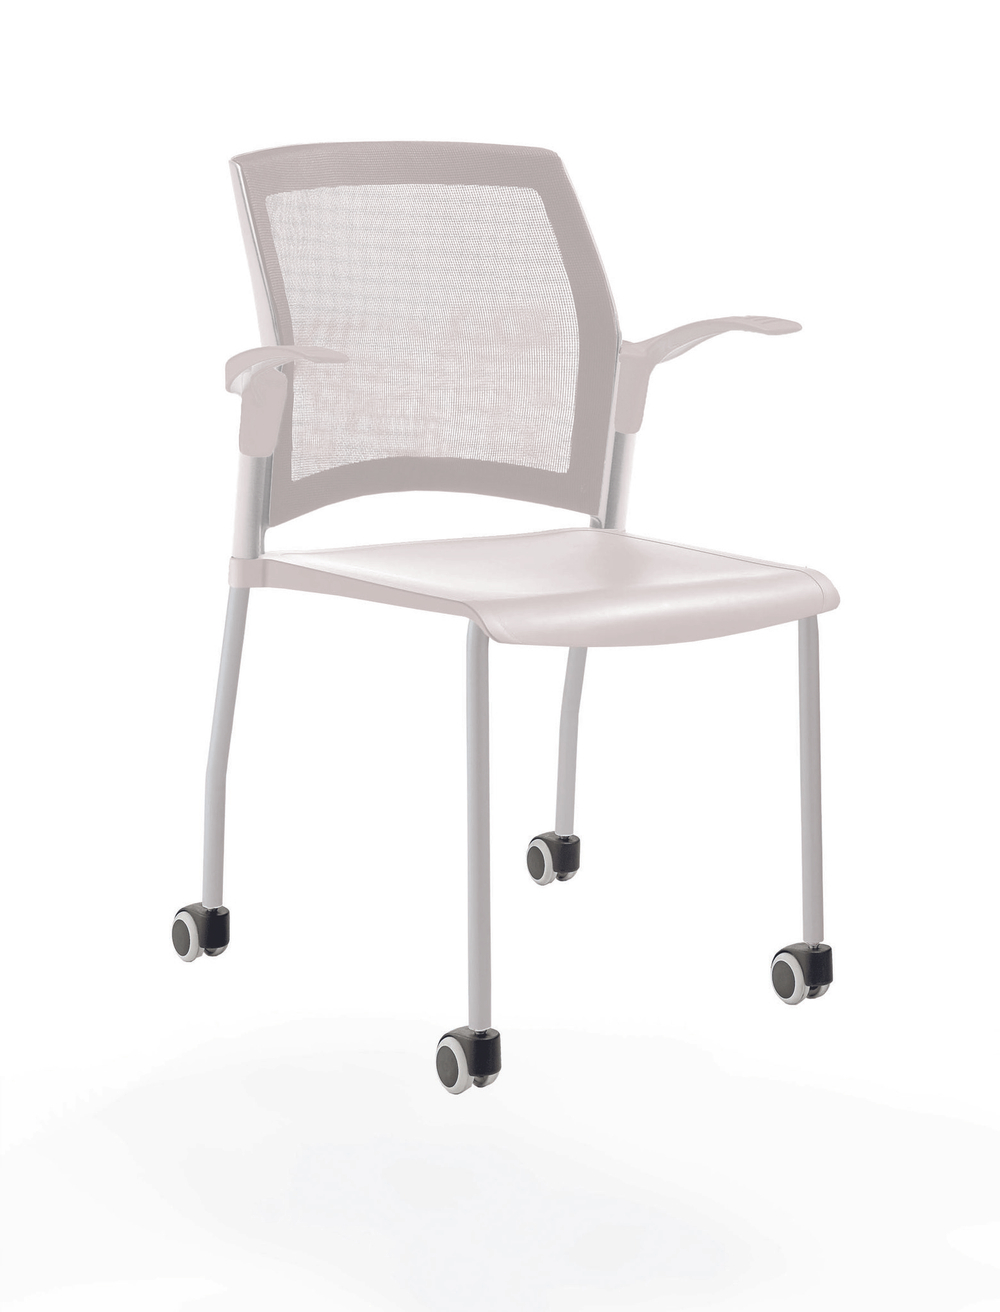 стул Rewind на 4 ногах и колесах, каркас серый, пластик белый, с открытыми подлокотниками, спинка-сетка